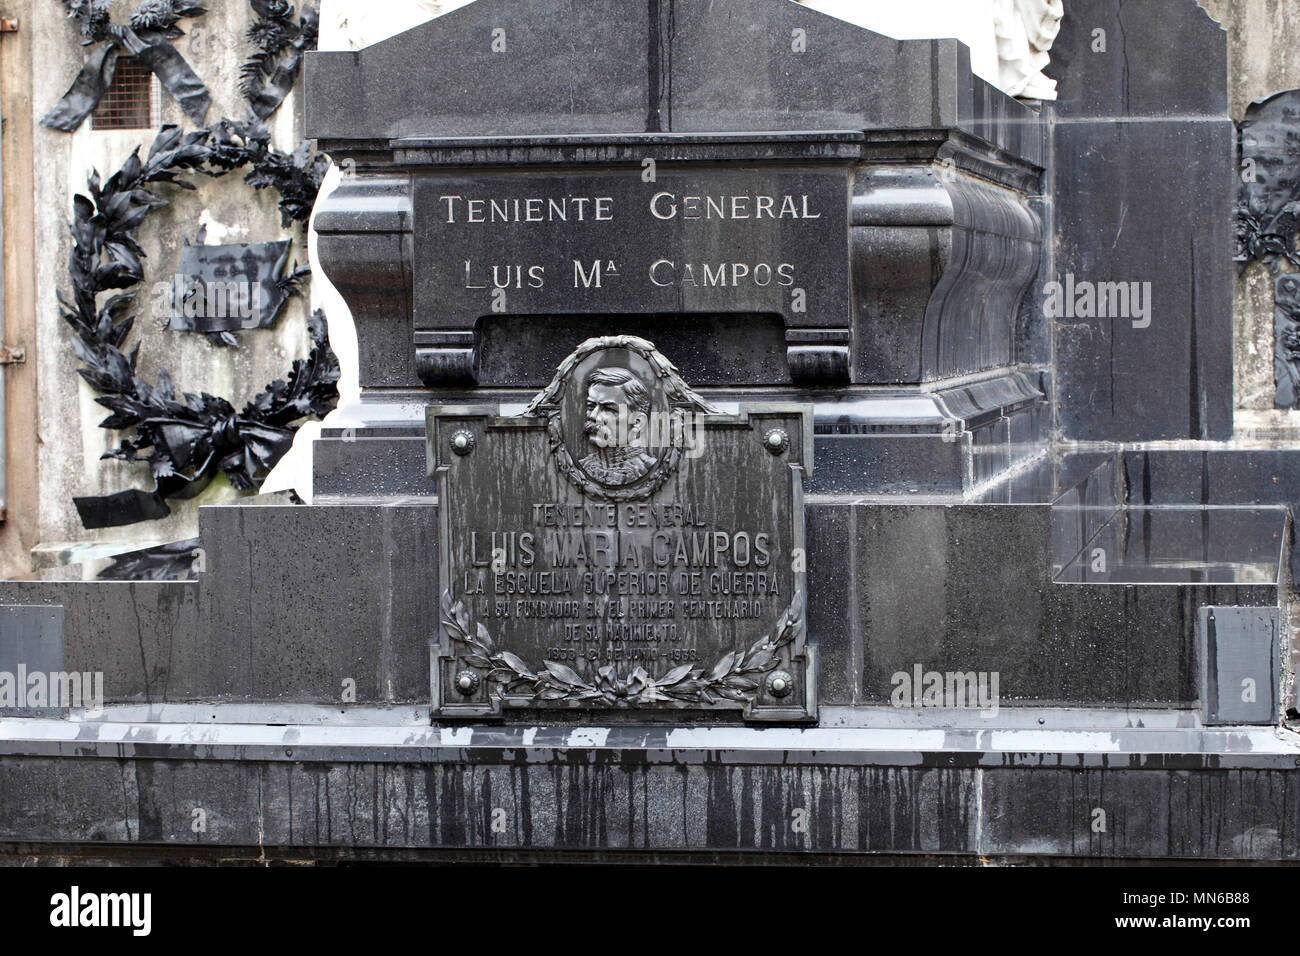 La Recoleta Friedhof Cementerio de la Recoleta, Buenos Aires, Argentinien, Gräber oder Gräber. Teniente General Luis Maria Campos. Stockfoto